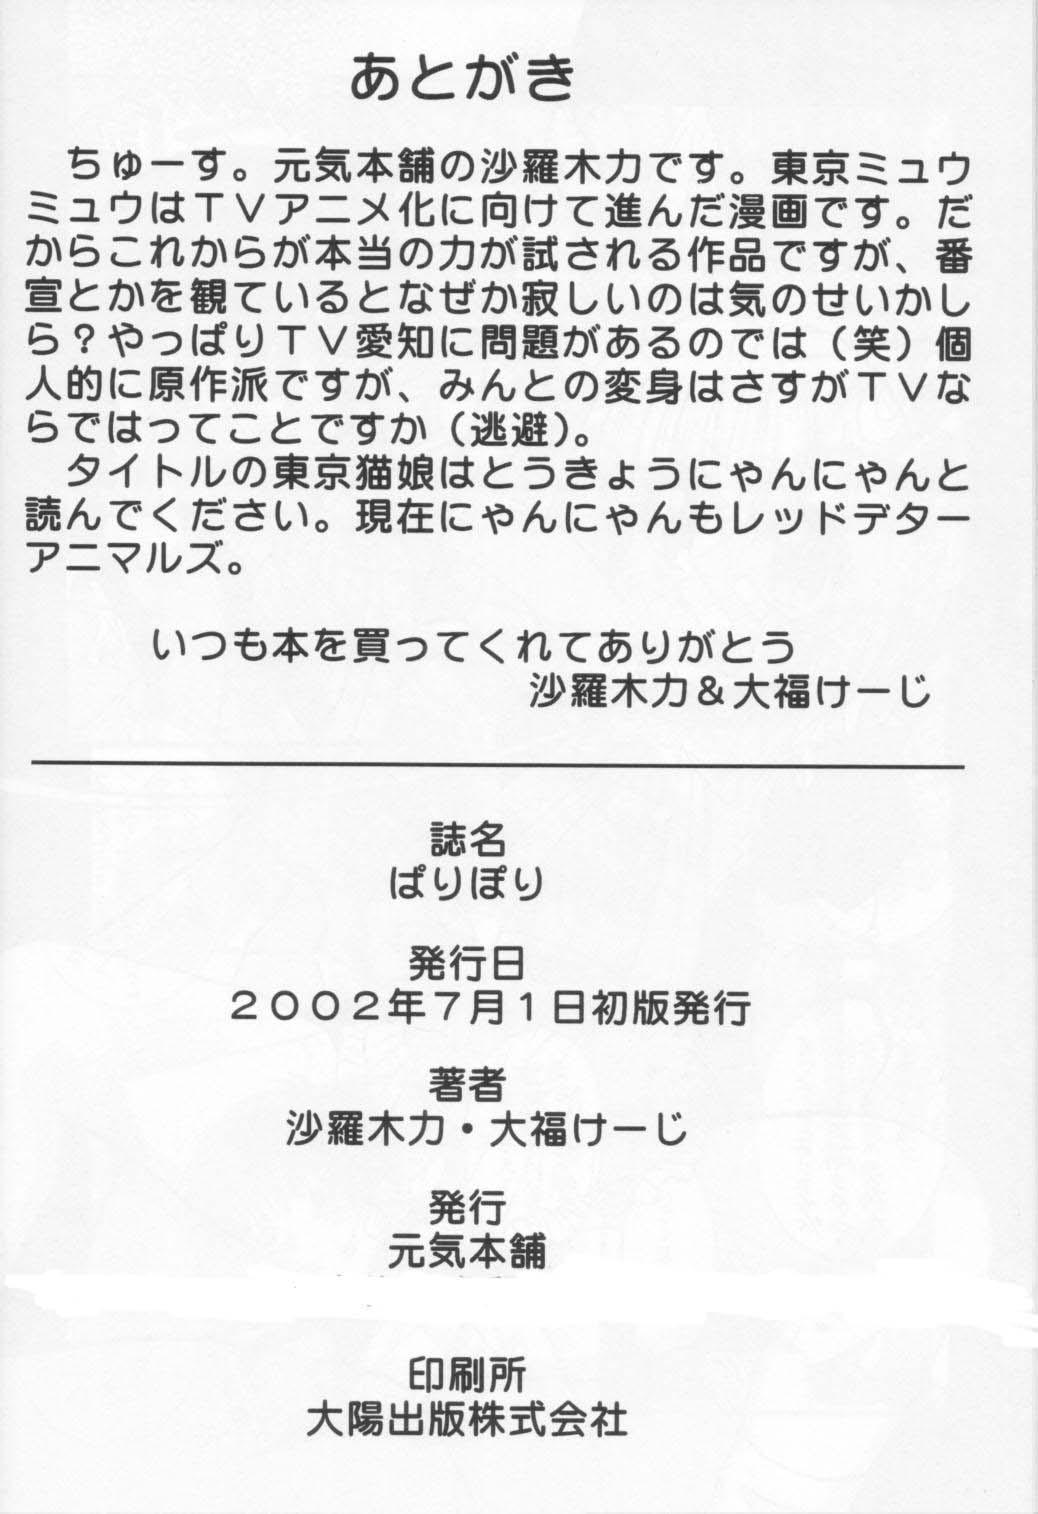 Freckles Tokyo Nekomusume - Tokyo mew mew Wank - Page 45